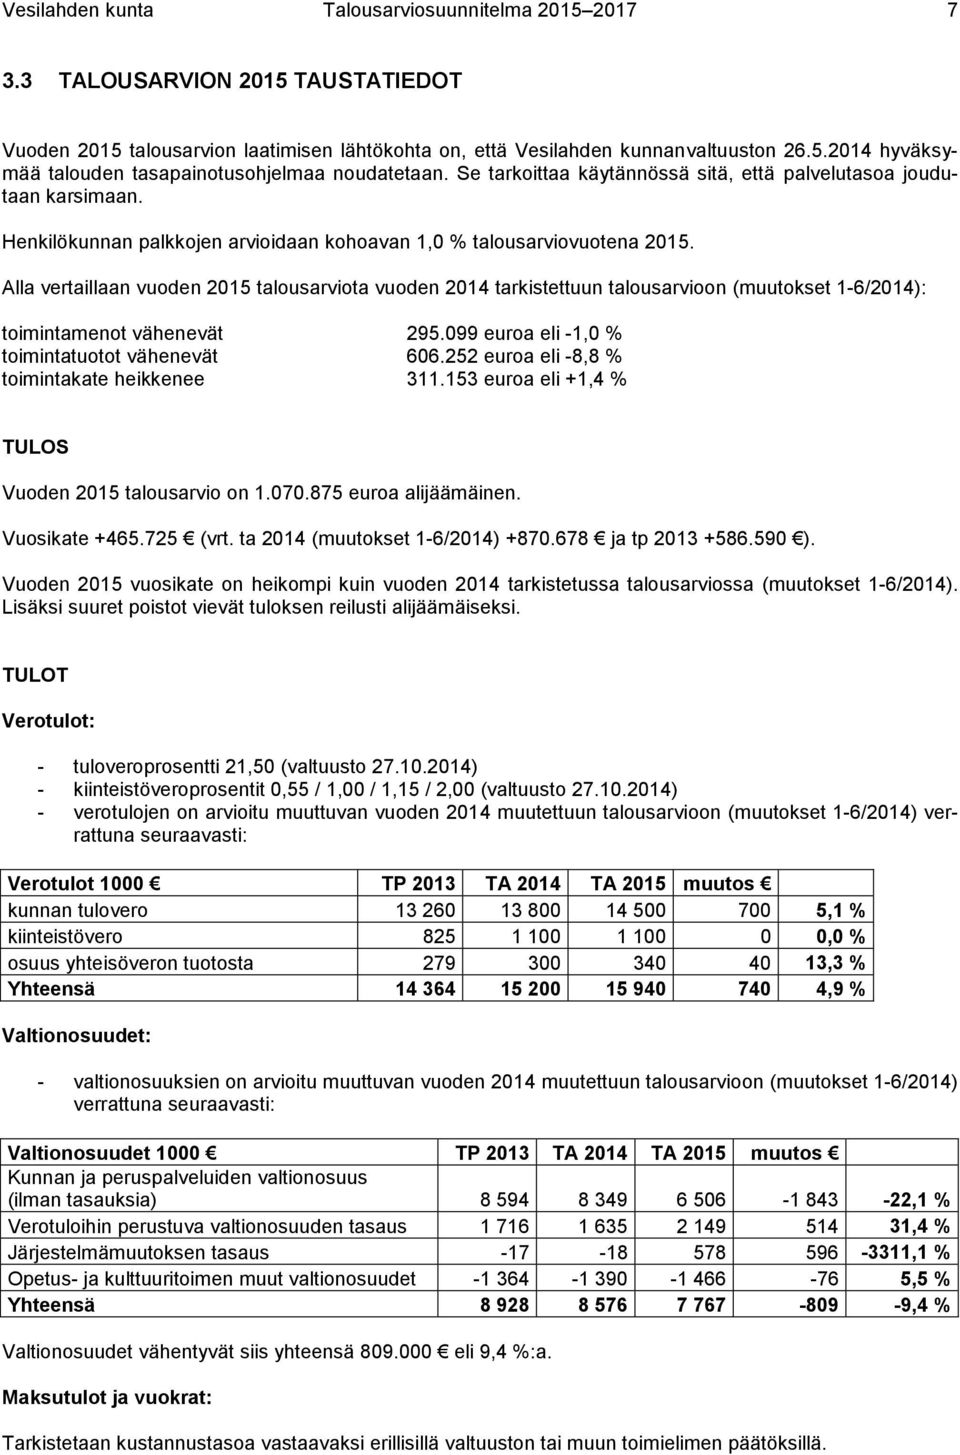 Alla vertaillaan vuoden 2015 talousarviota vuoden 2014 tarkistettuun talousarvioon (muutokset 1-6/2014): toimintamenot vähenevät 295.099 euroa eli -1,0 % toimintatuotot vähenevät 606.